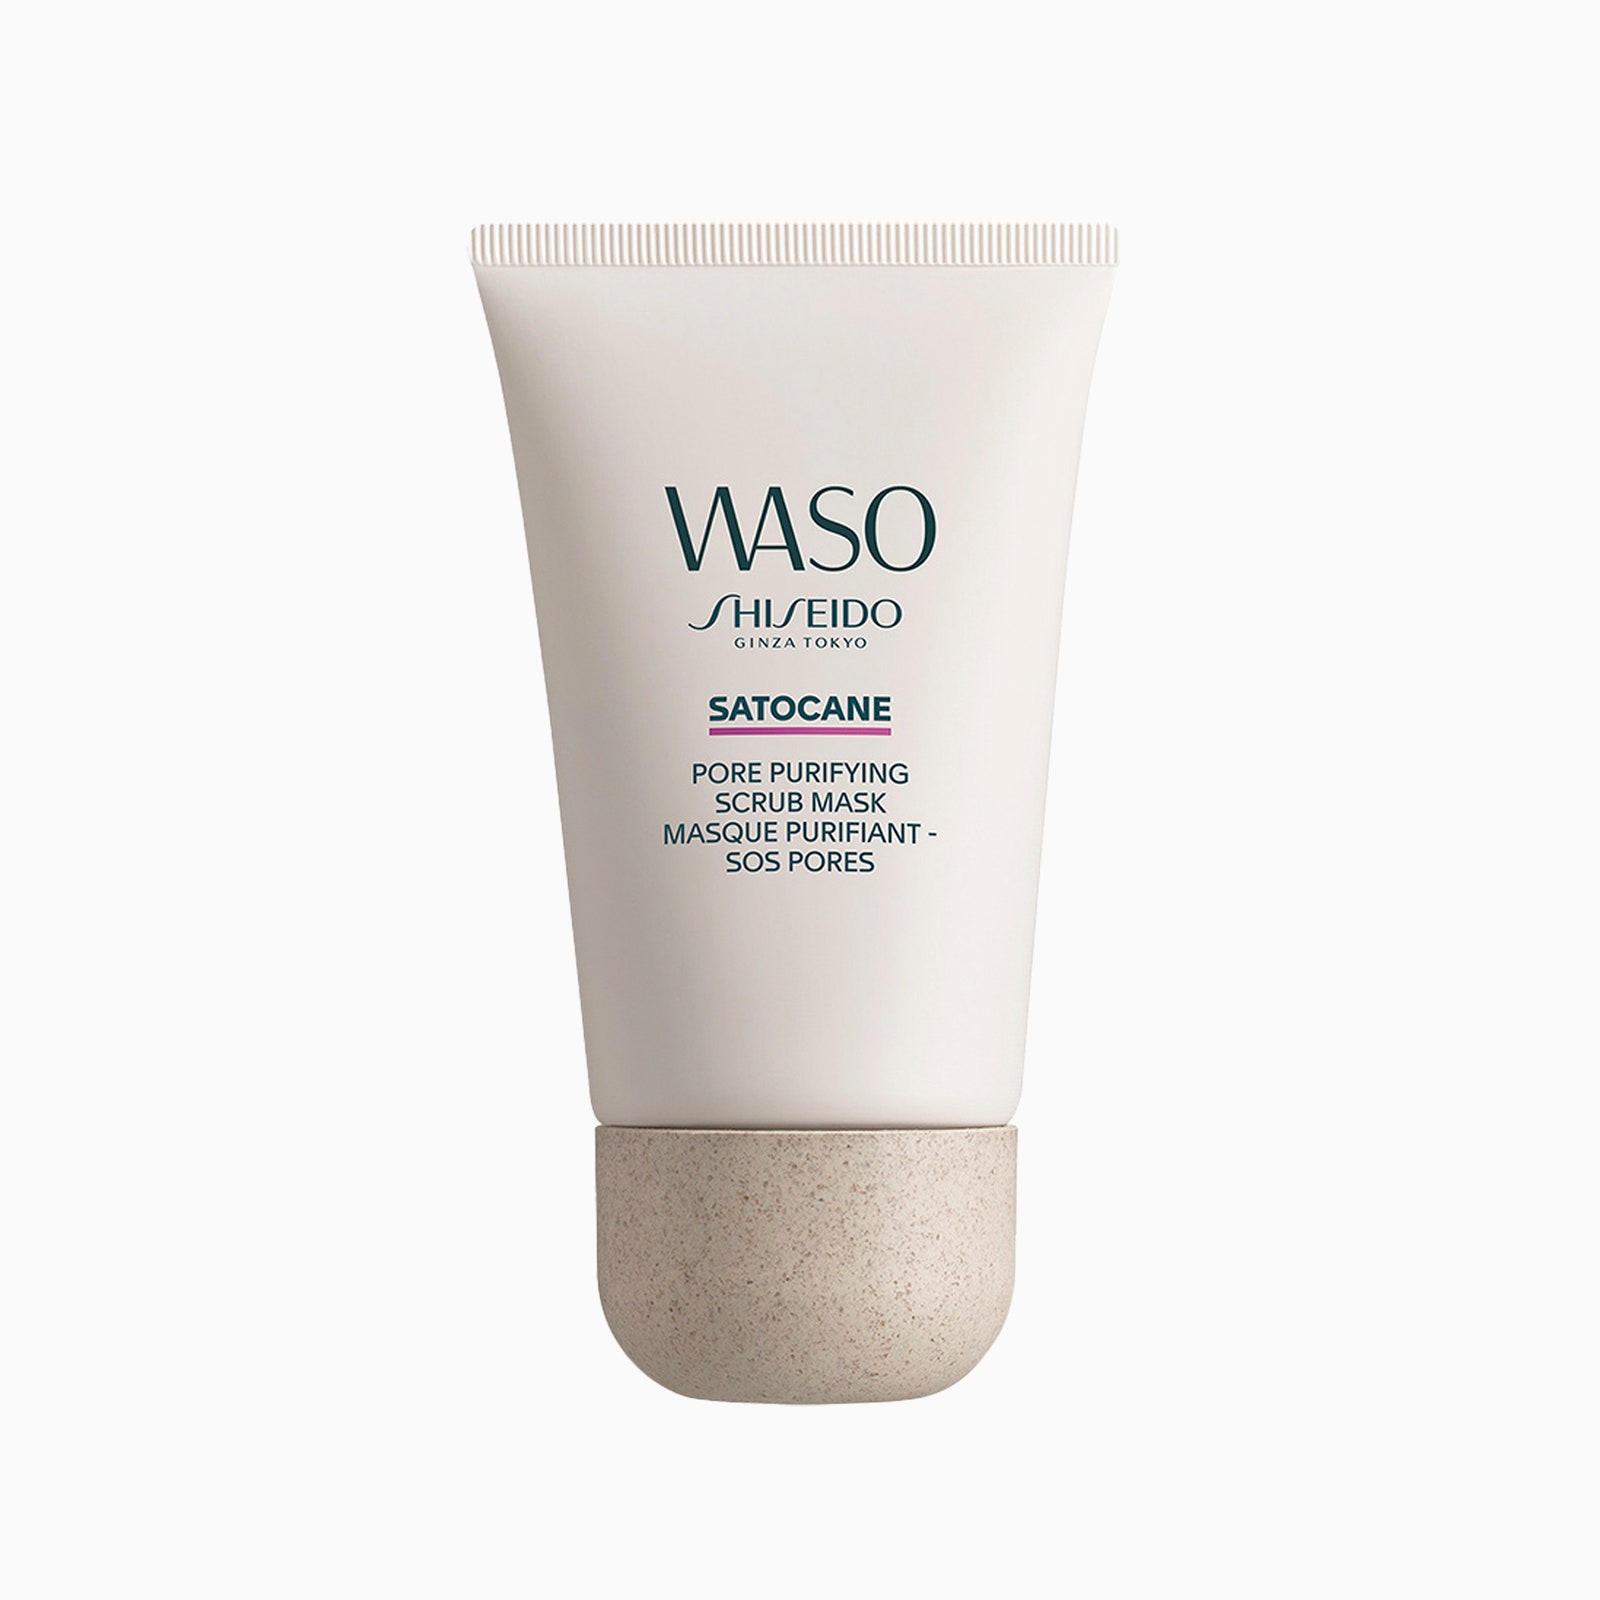 Маскаскраб для глубокого очищения пор Waso Satocane Pore Purifying Scrub Mask Shiseido 3195 рублей